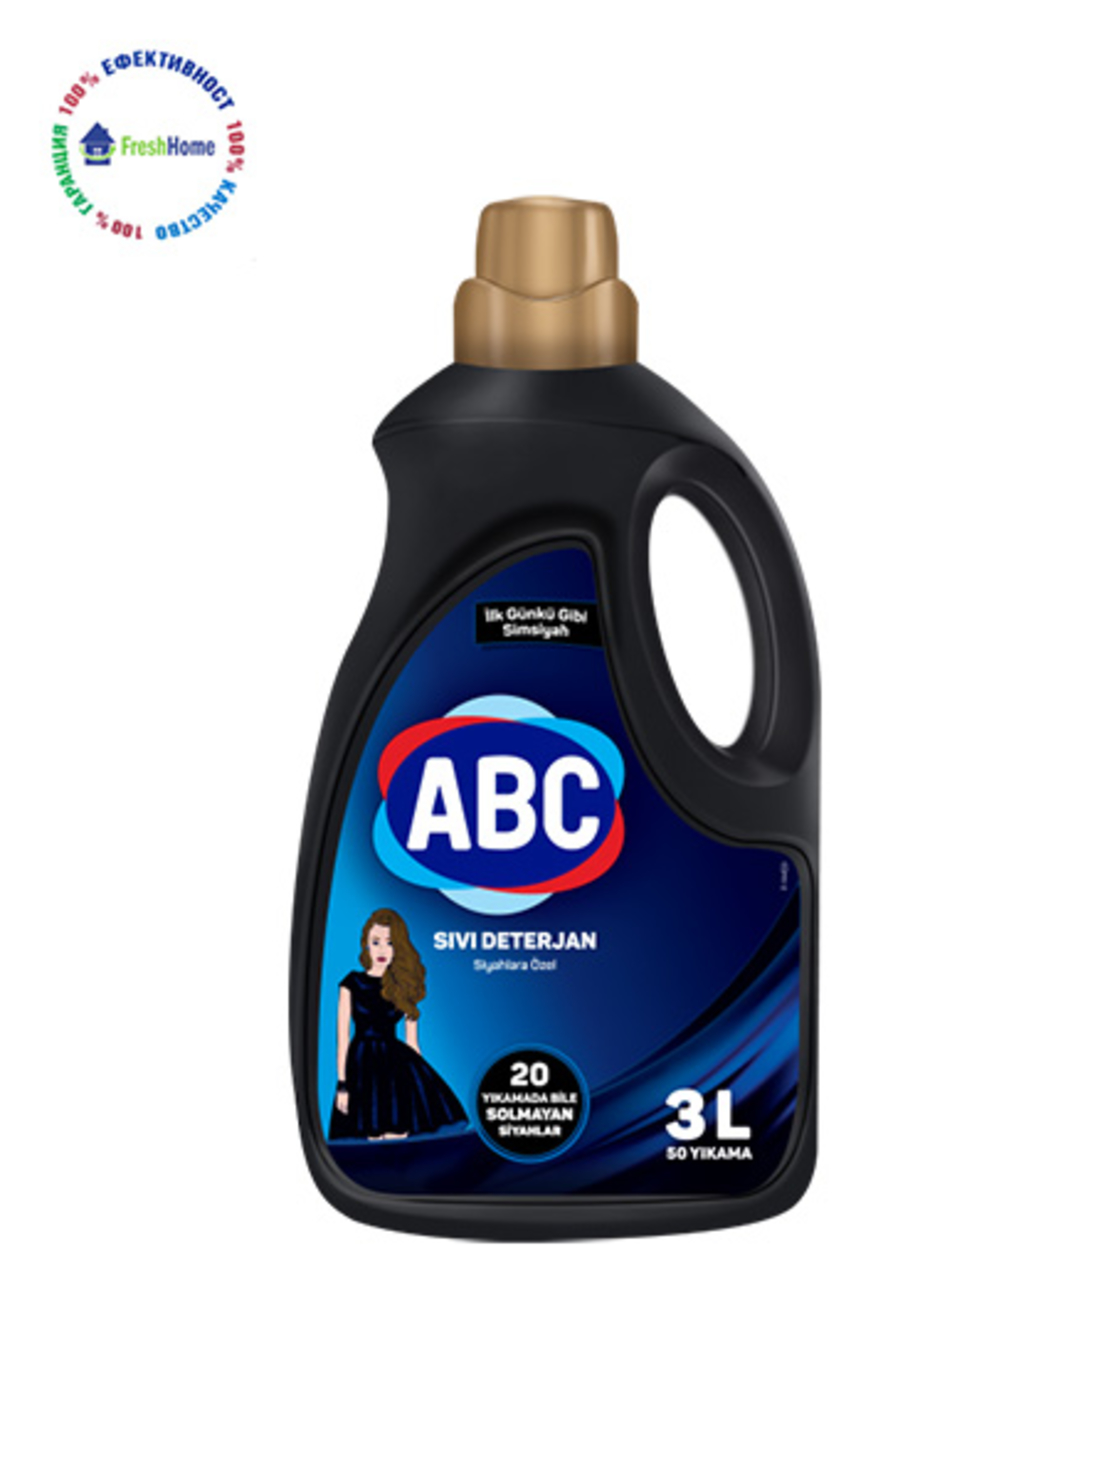 ABC BLACK течен перилен препарат за черни и тъмни тъкани. 50 пранета/ 3л.